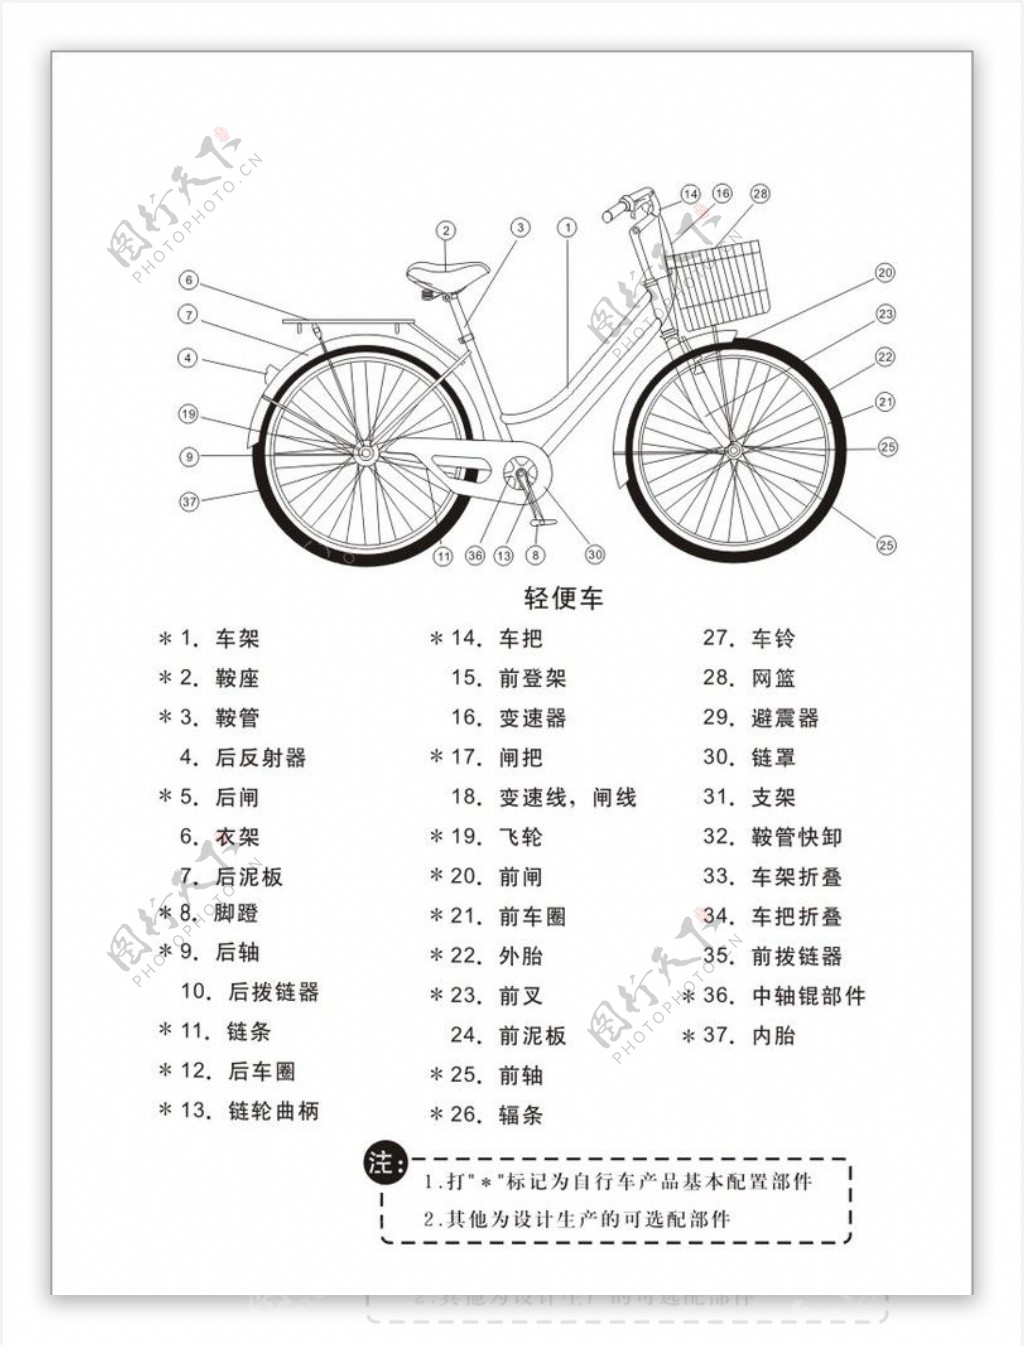 公主自行车说明书及零部件分部图图片